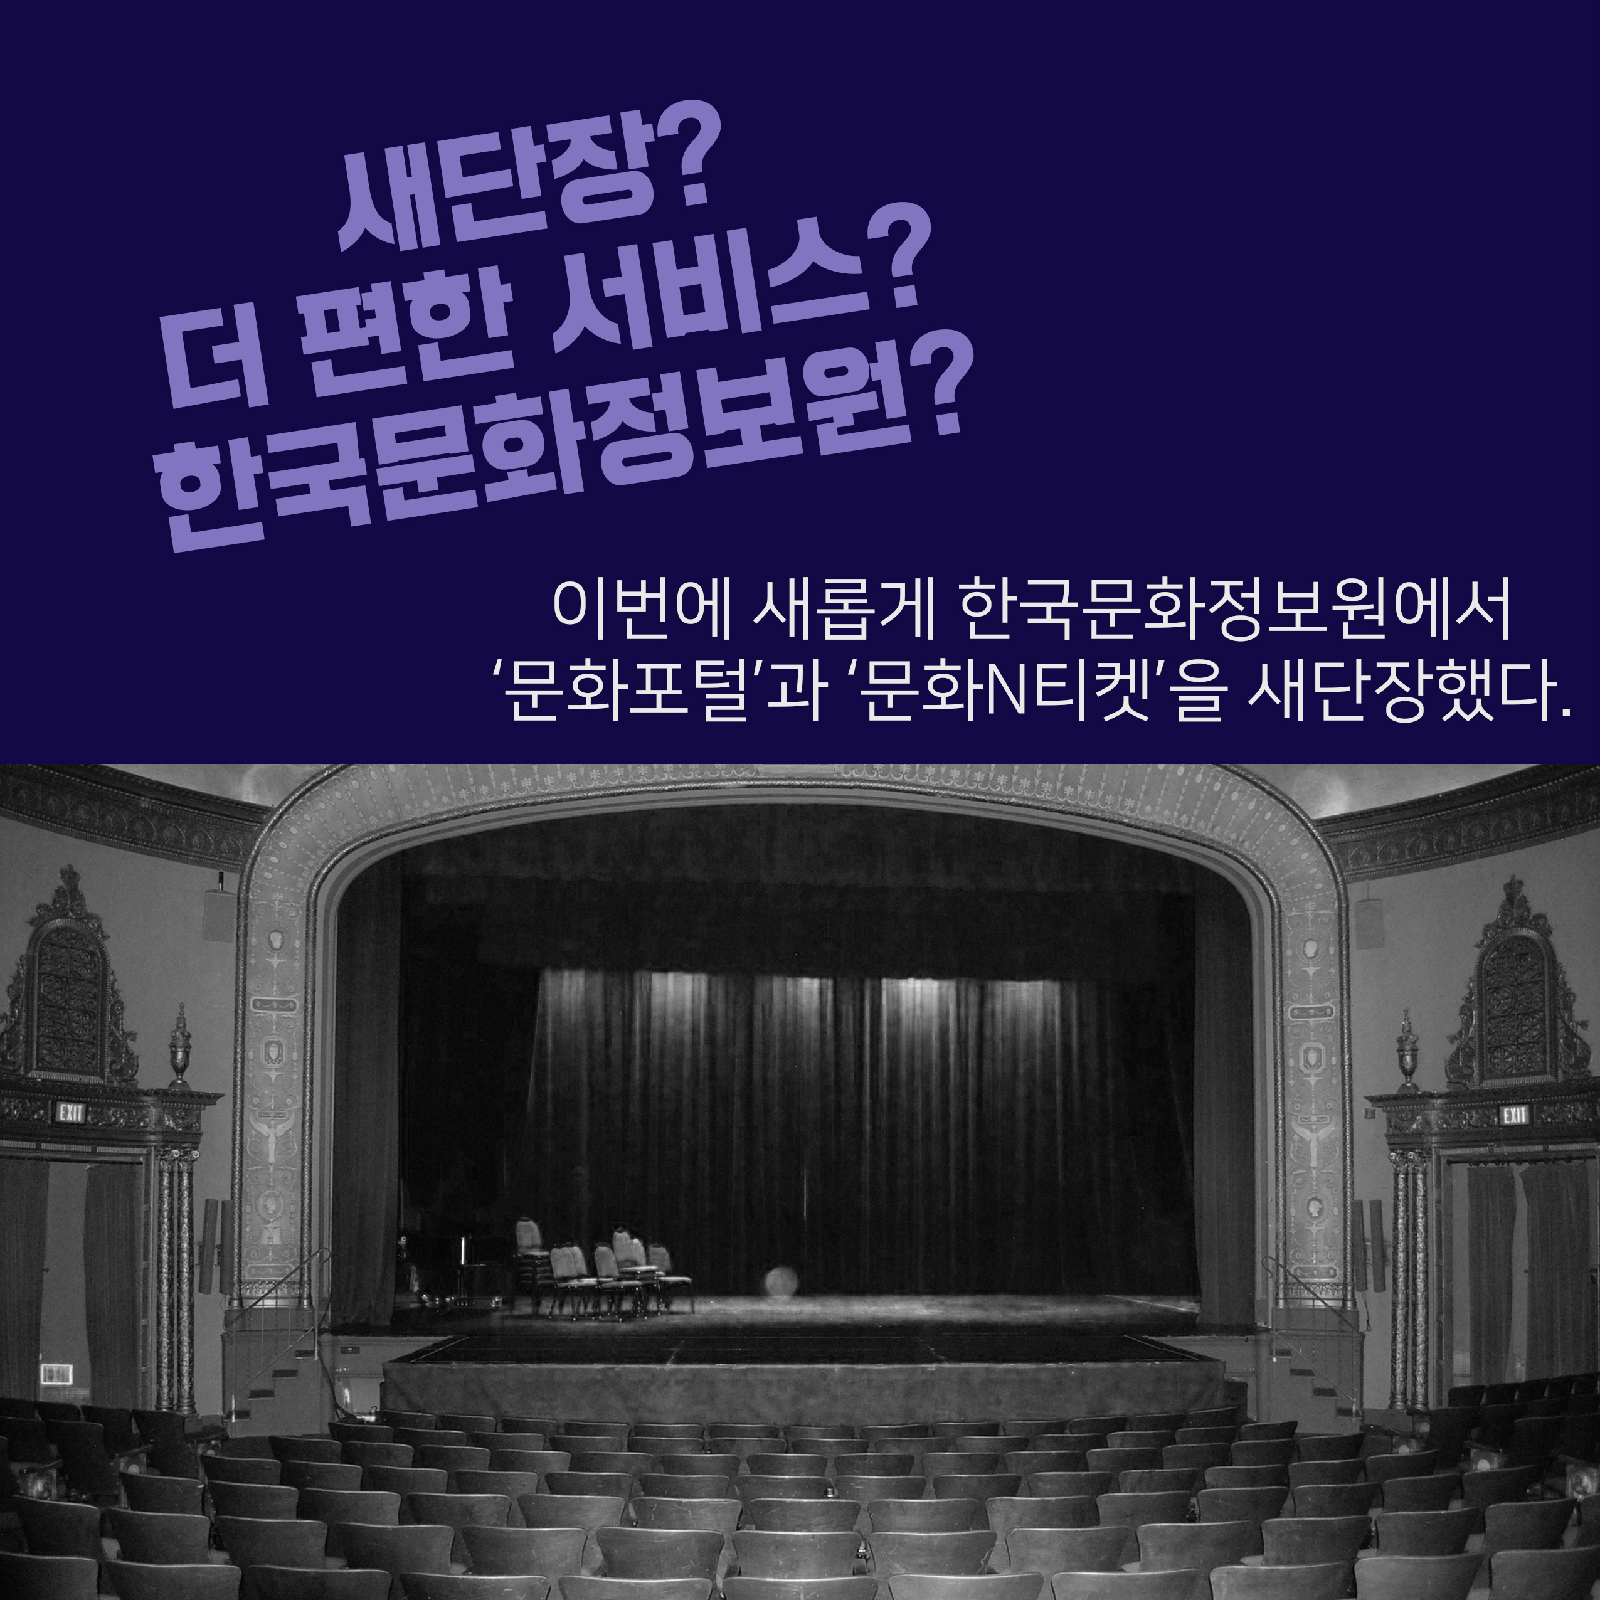 새단장? 더 편한 서비스? 한국문화정보원? 이번에 새롭게 한국문화정보원에서 '문화포털'과 '문화N티켓'을 새단장했다.